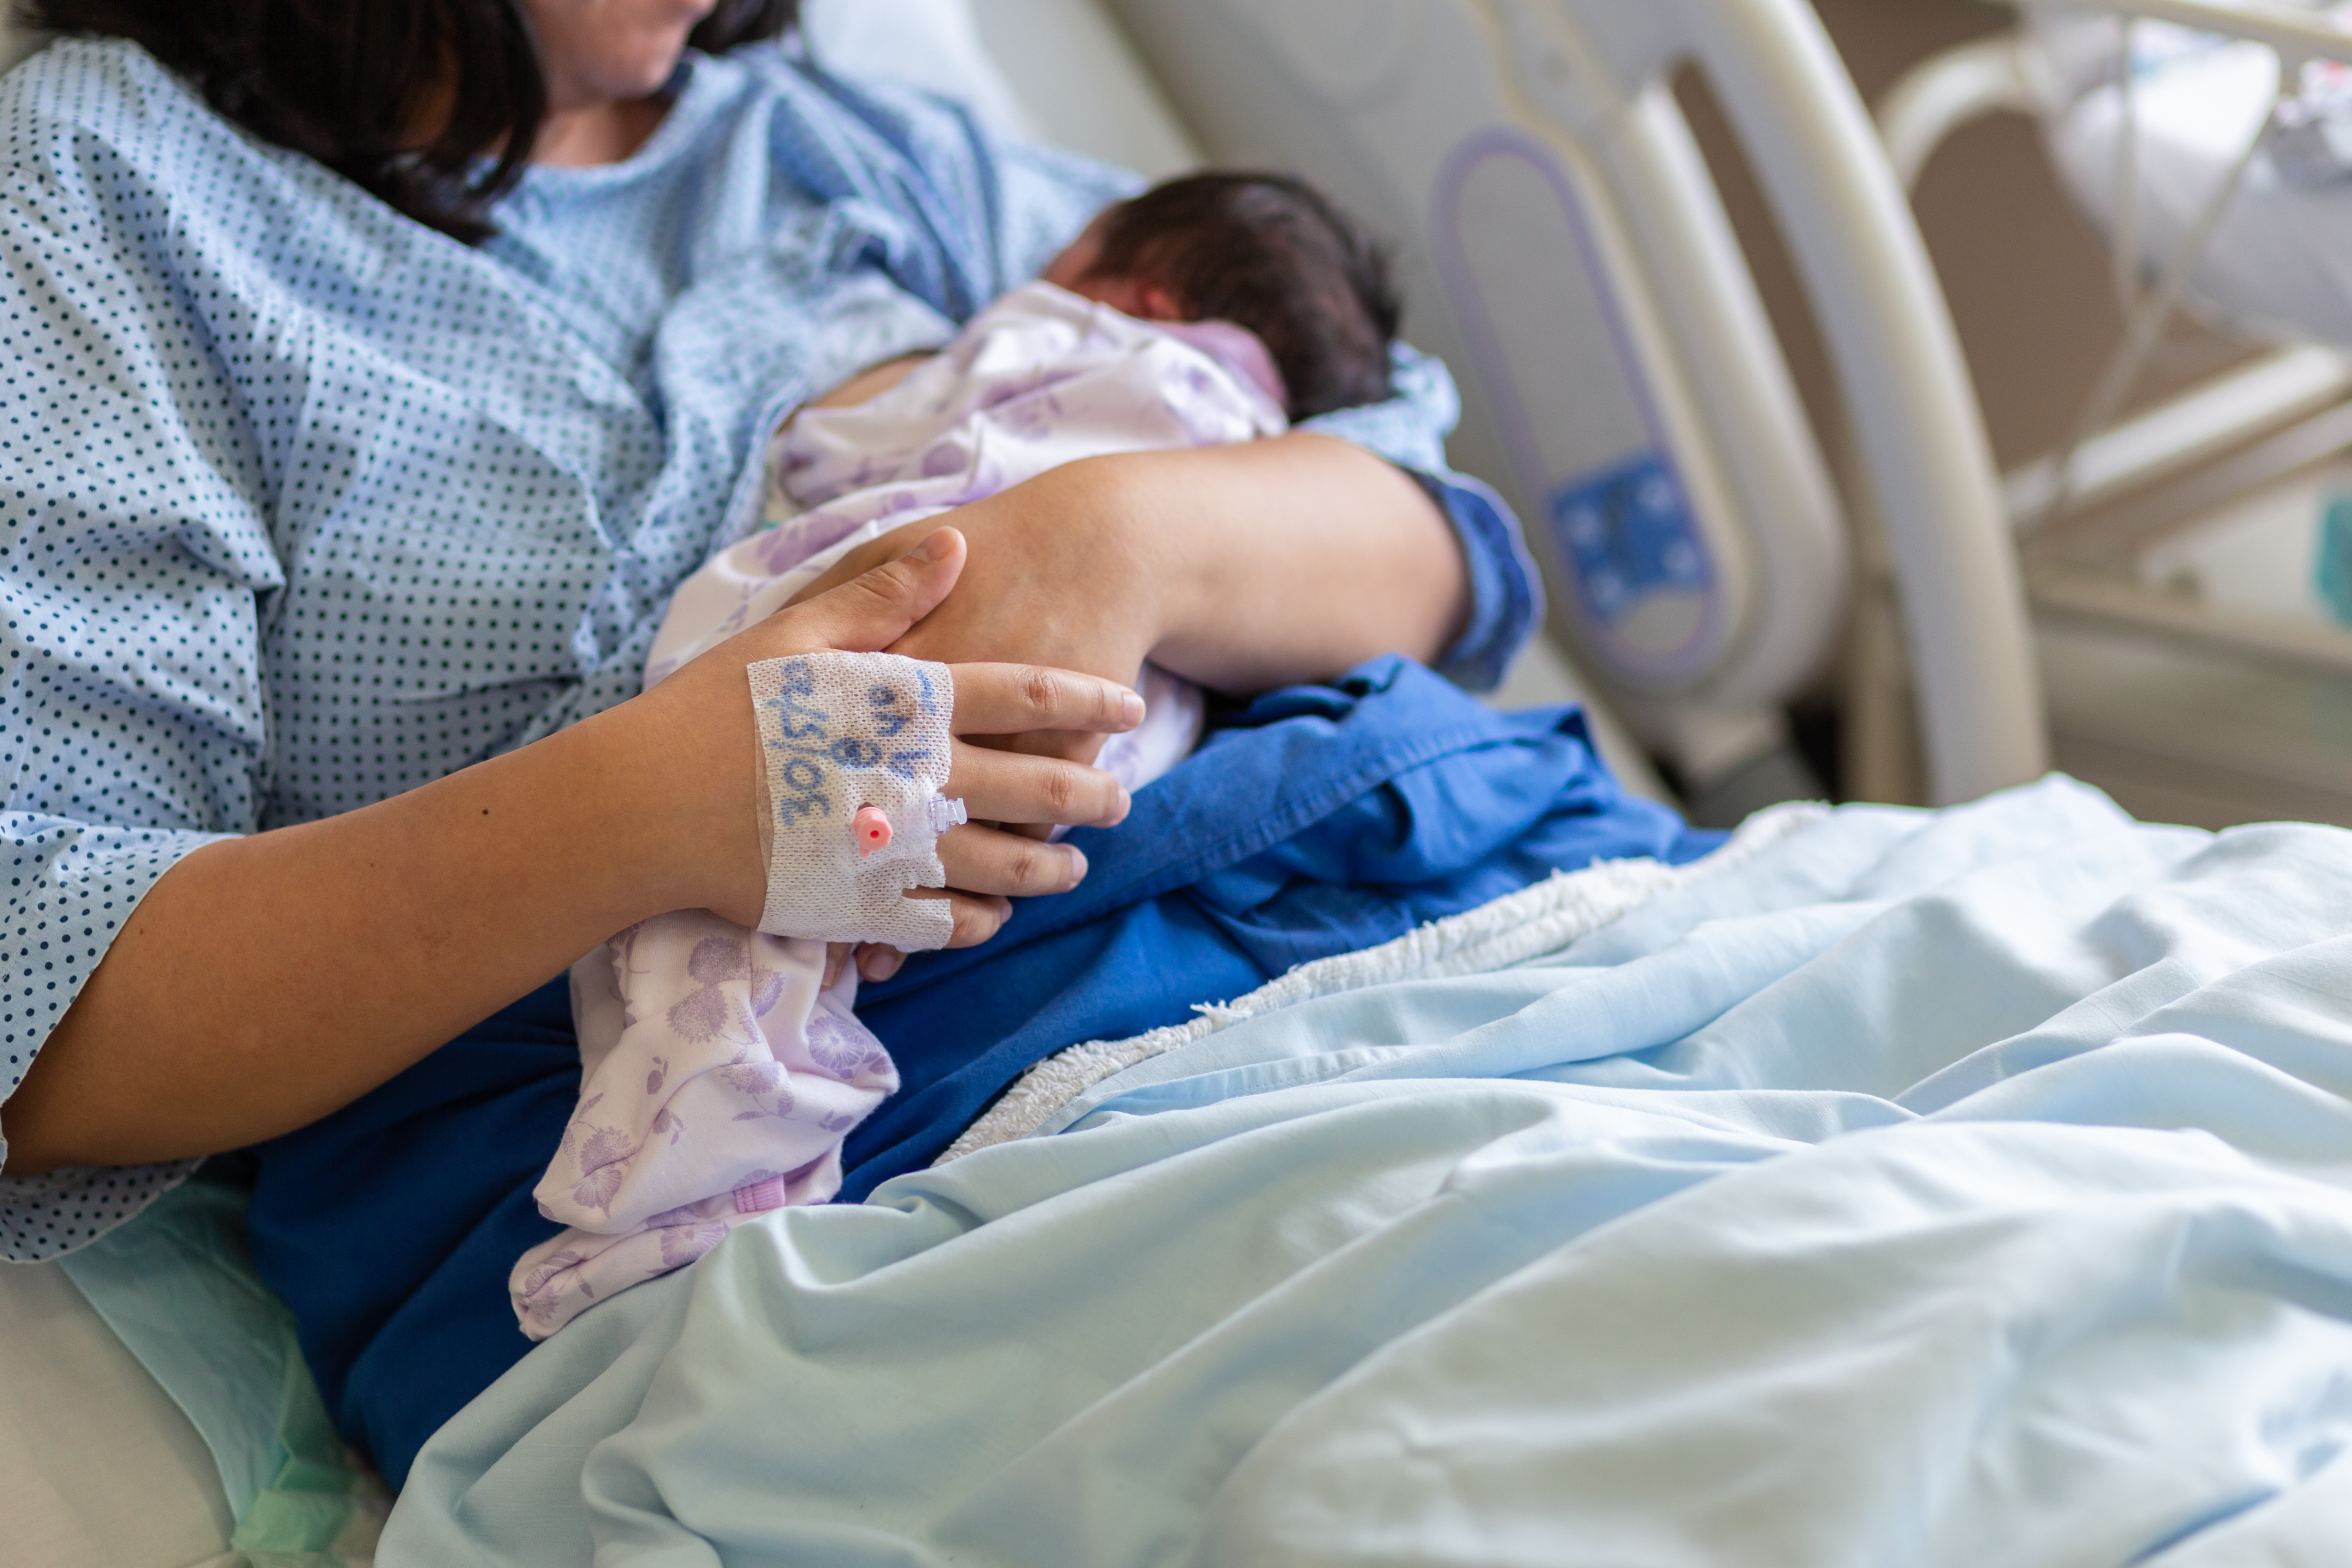 A woman cradling a newborn baby | Source: Shutterstock